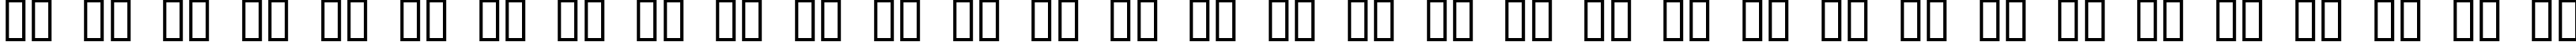 Пример написания русского алфавита шрифтом ANVIL